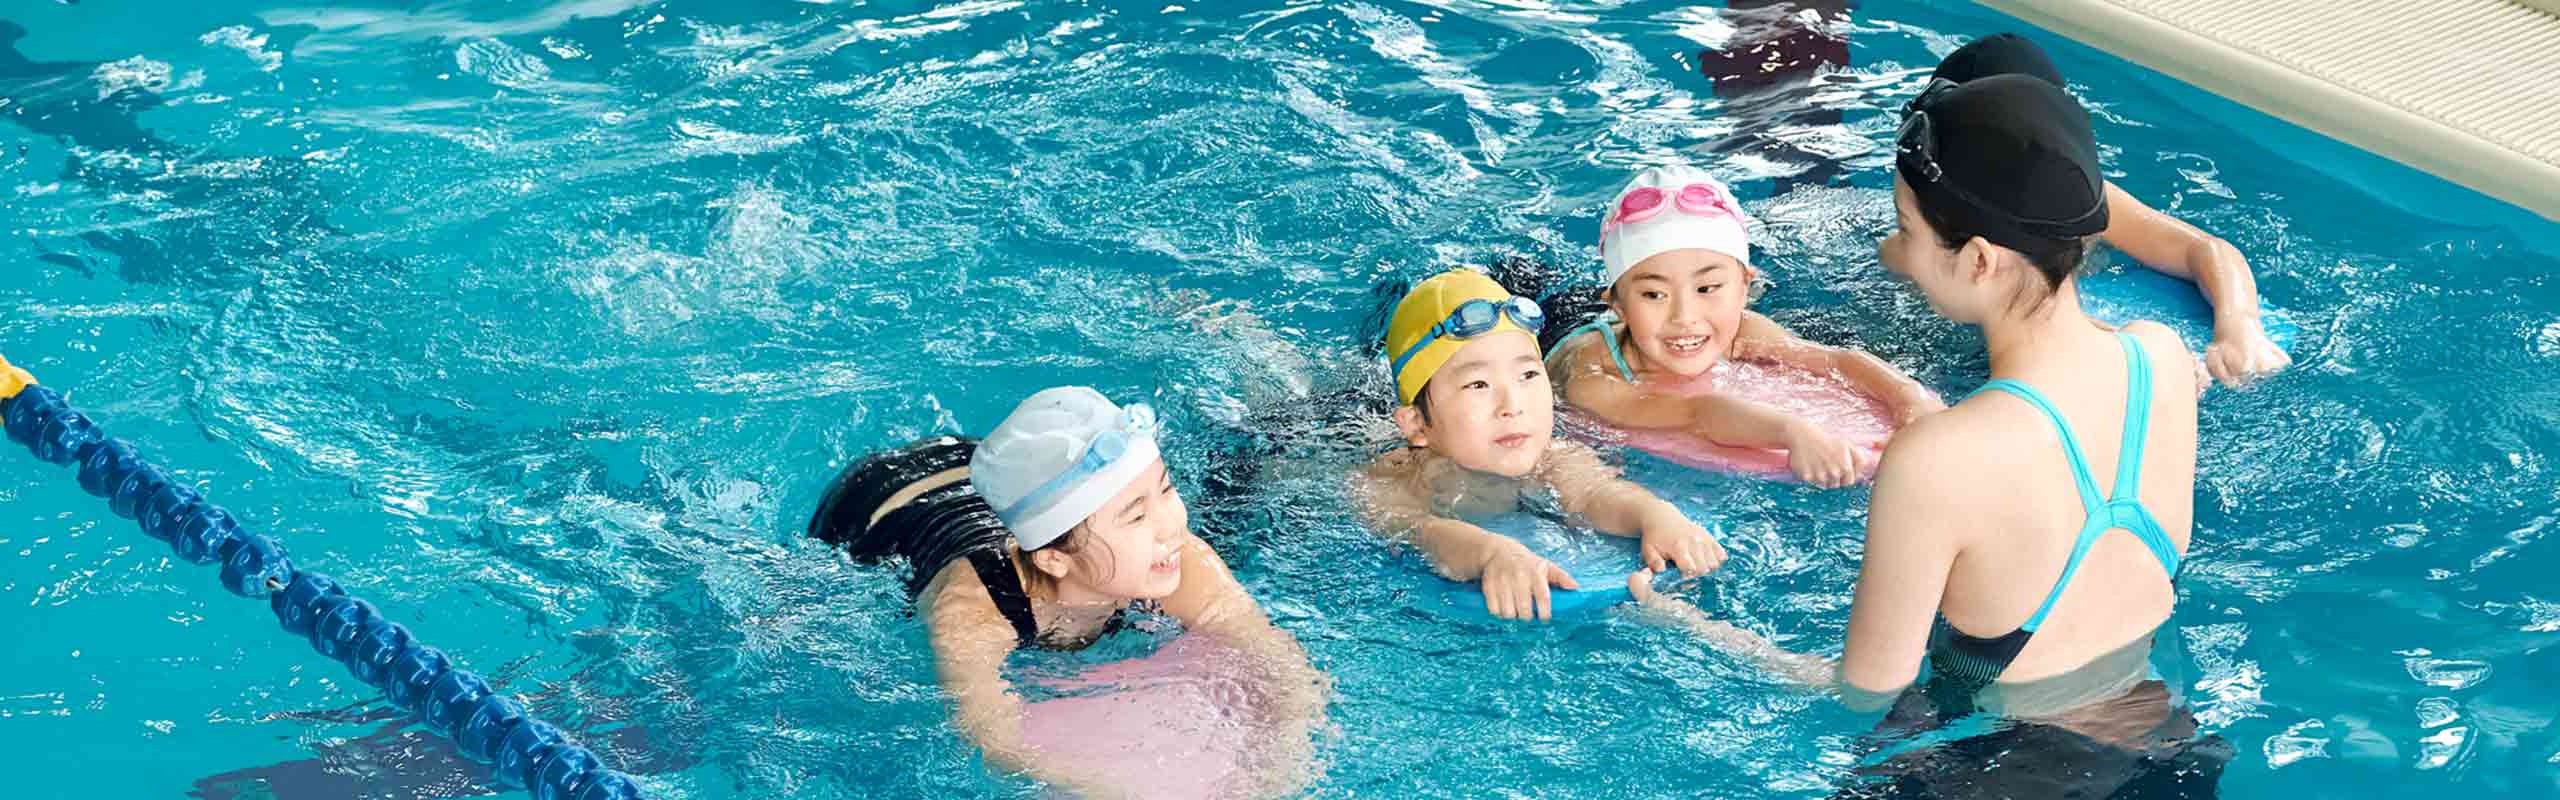 子どもの「やりたい！」を応援。人気の習い事「水泳」の魅力と親のサポートを解説。